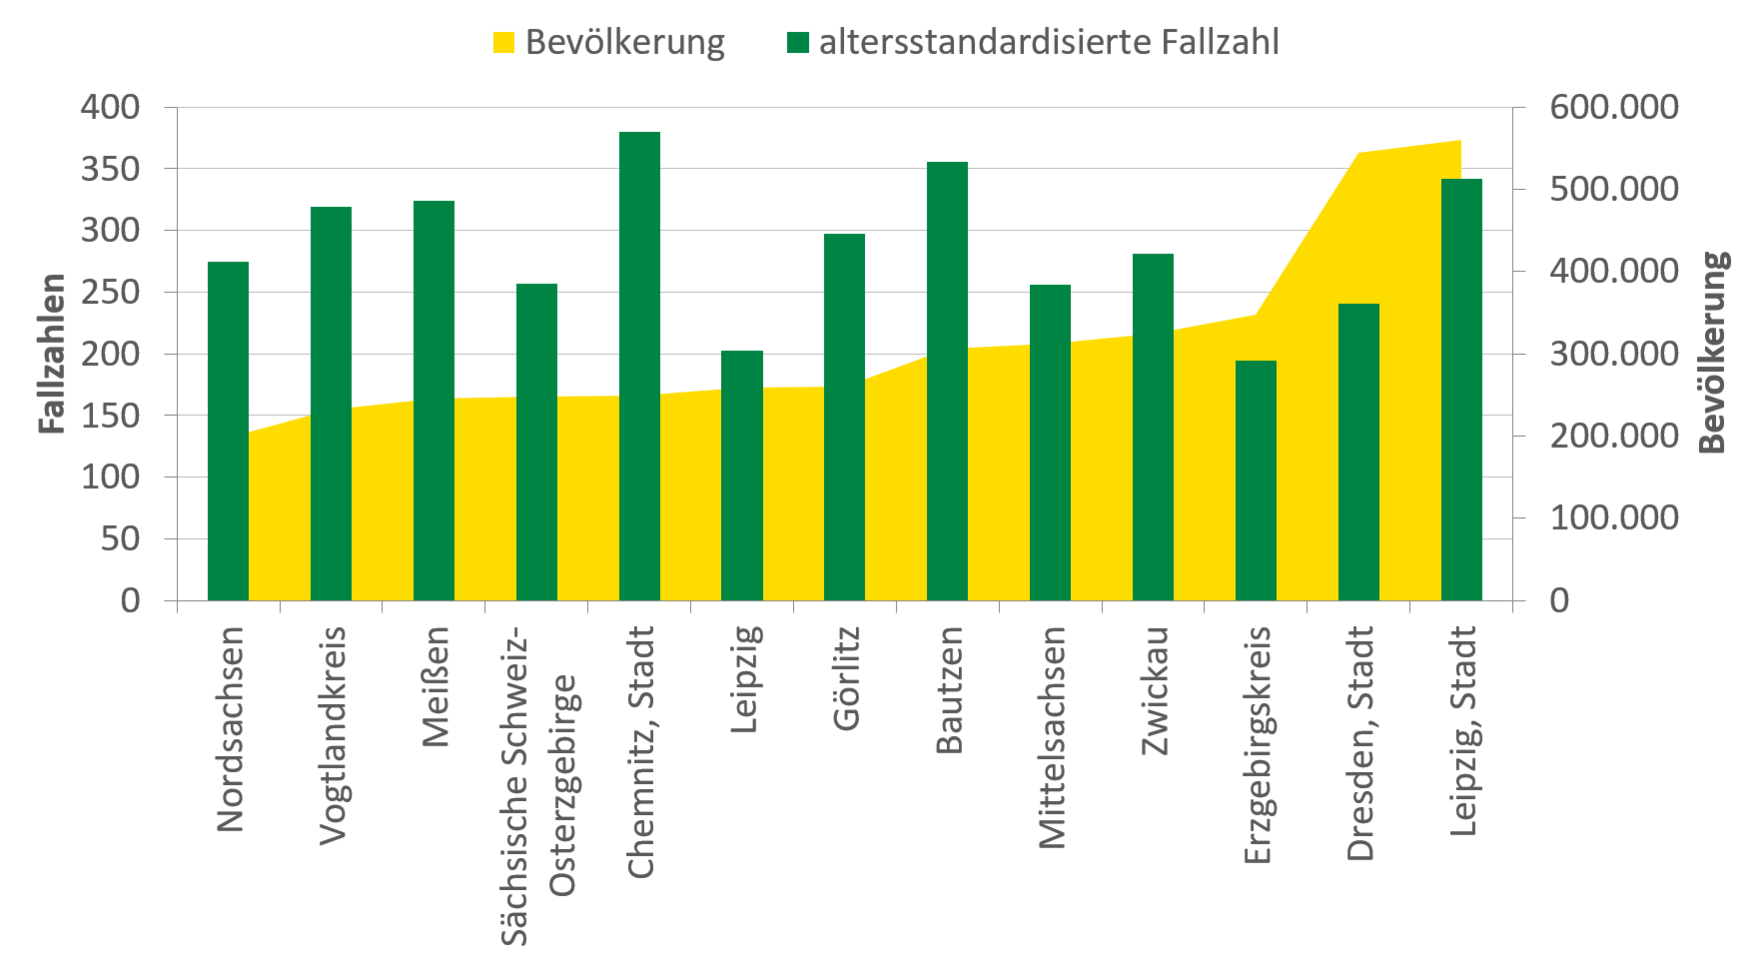 Die Fallzahlen stehen nicht im Zusammenhang mit der Bevölkerungsgröße. Mit über 370 Fällen bei einer Bevölkerung von etwas über 200.000 Einwohnern hat Chemnitz die meisten Zugänge mit Hauptdiagnose im Jahr 2015 zu verzeichnen. Obwohl Leipzig mit über 500.000 die meisten Einwohner hat, ist die Stadt nur auf dem dritten Rang, dicht gefolgt von den weniger bevölkerten Landkreisen Nordsachsen und Vogtlandkreis.